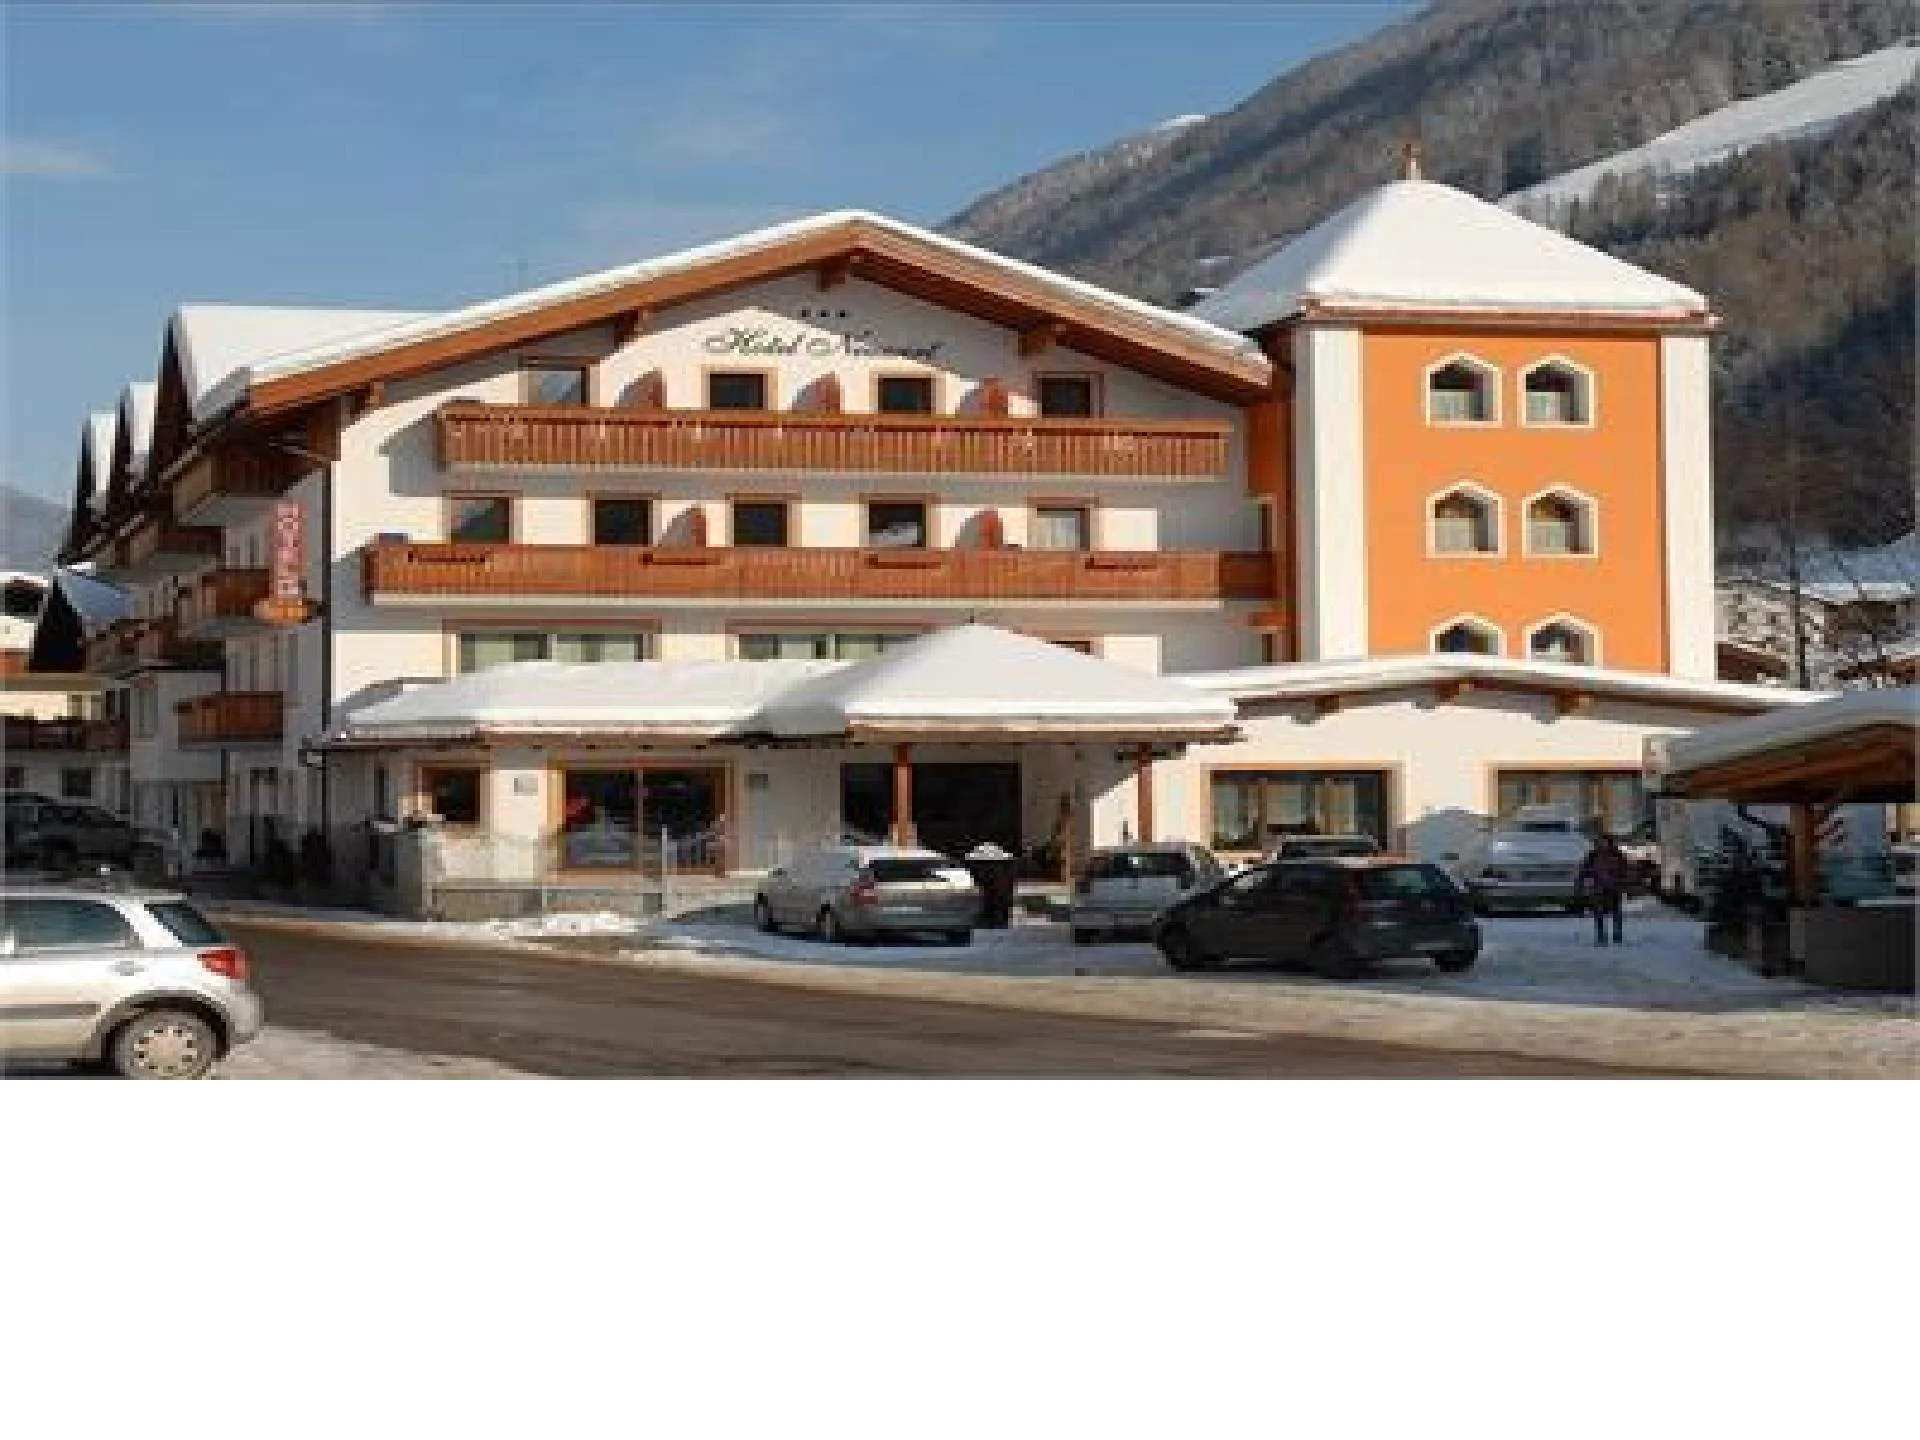 Neuwirt Hotel Valle Aurina 1 suedtirol.info